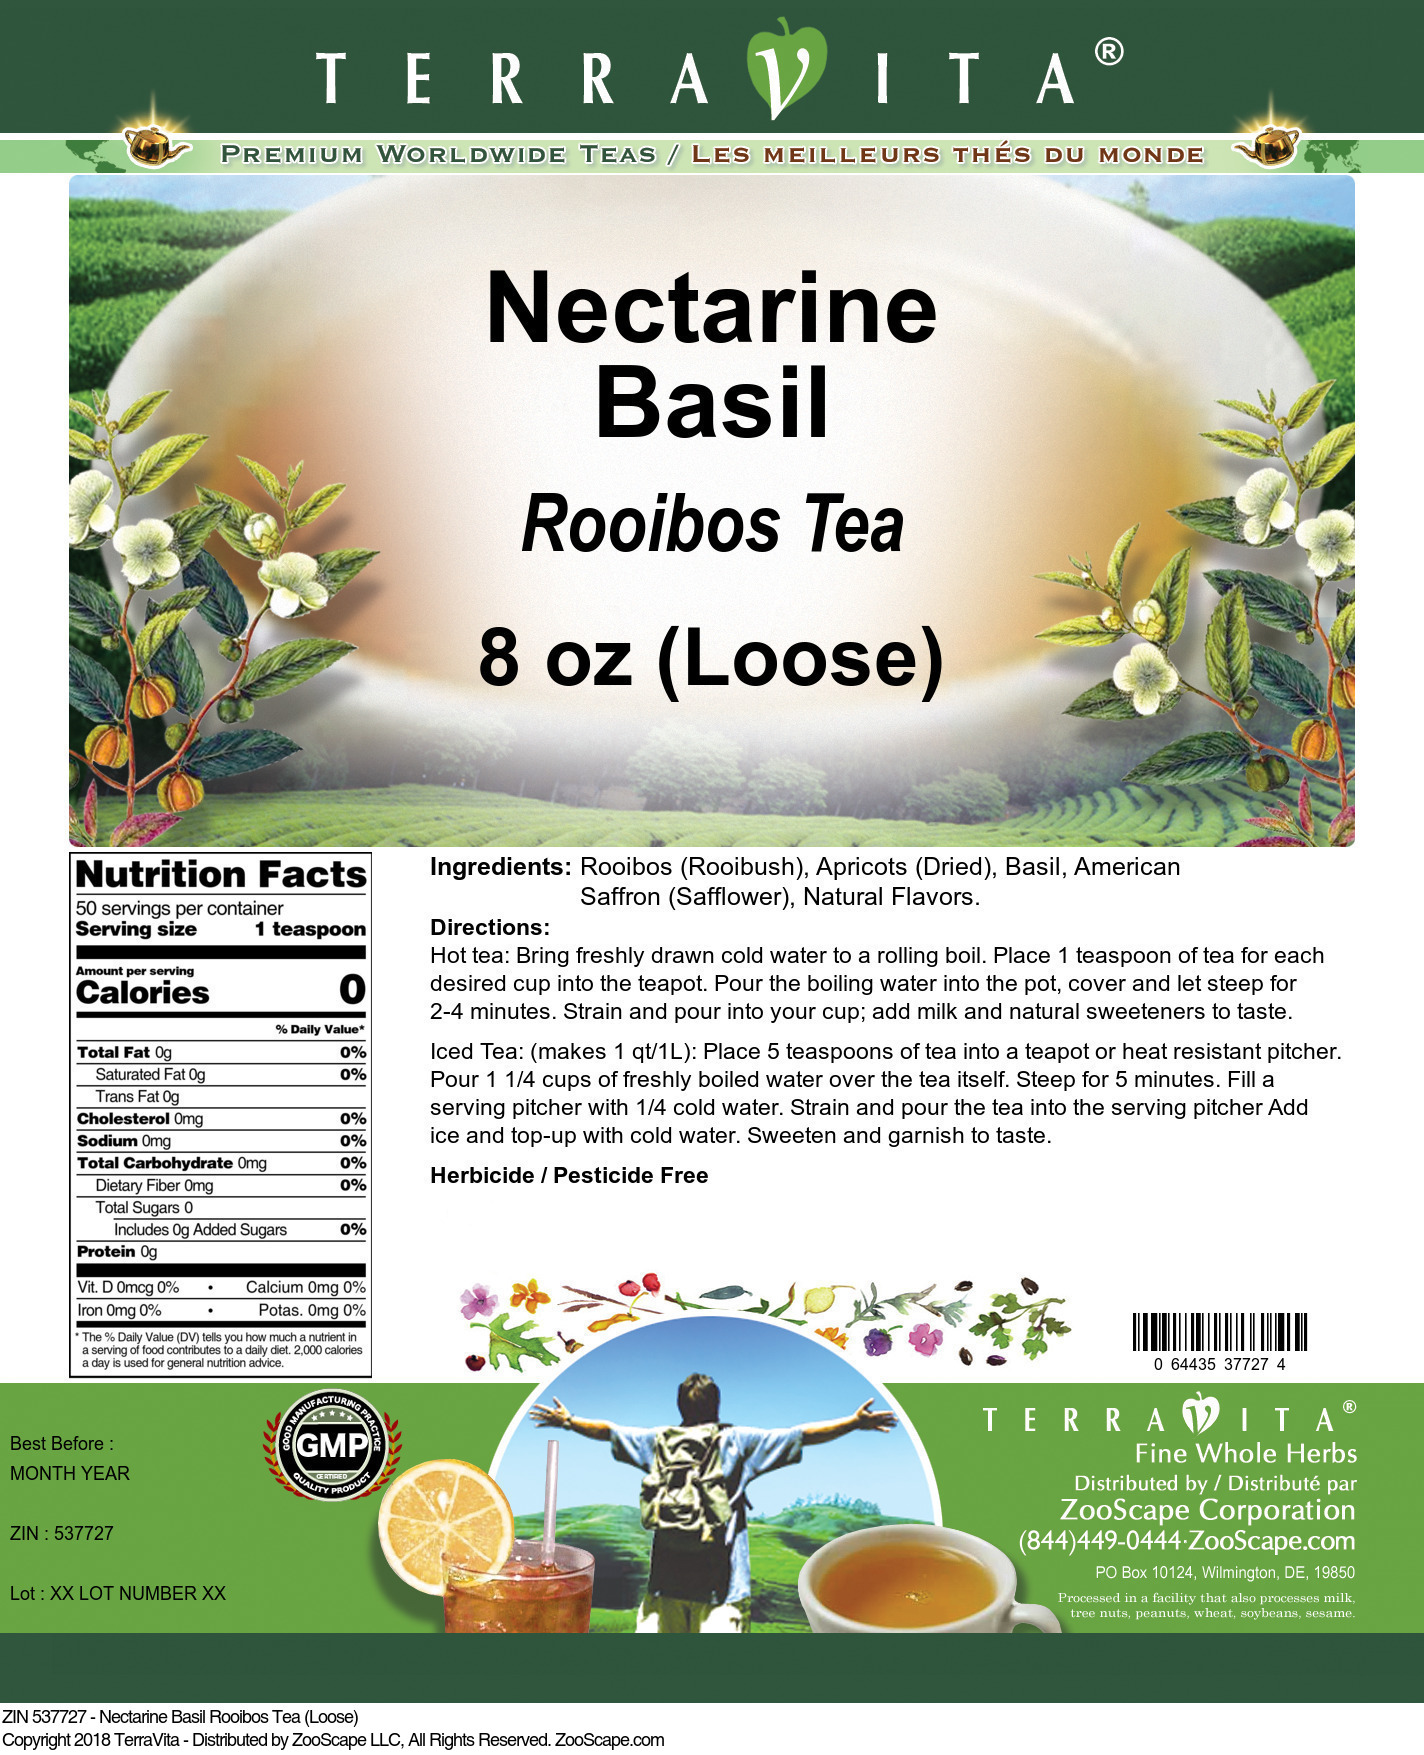 Nectarine Basil Rooibos Tea (Loose) - Label